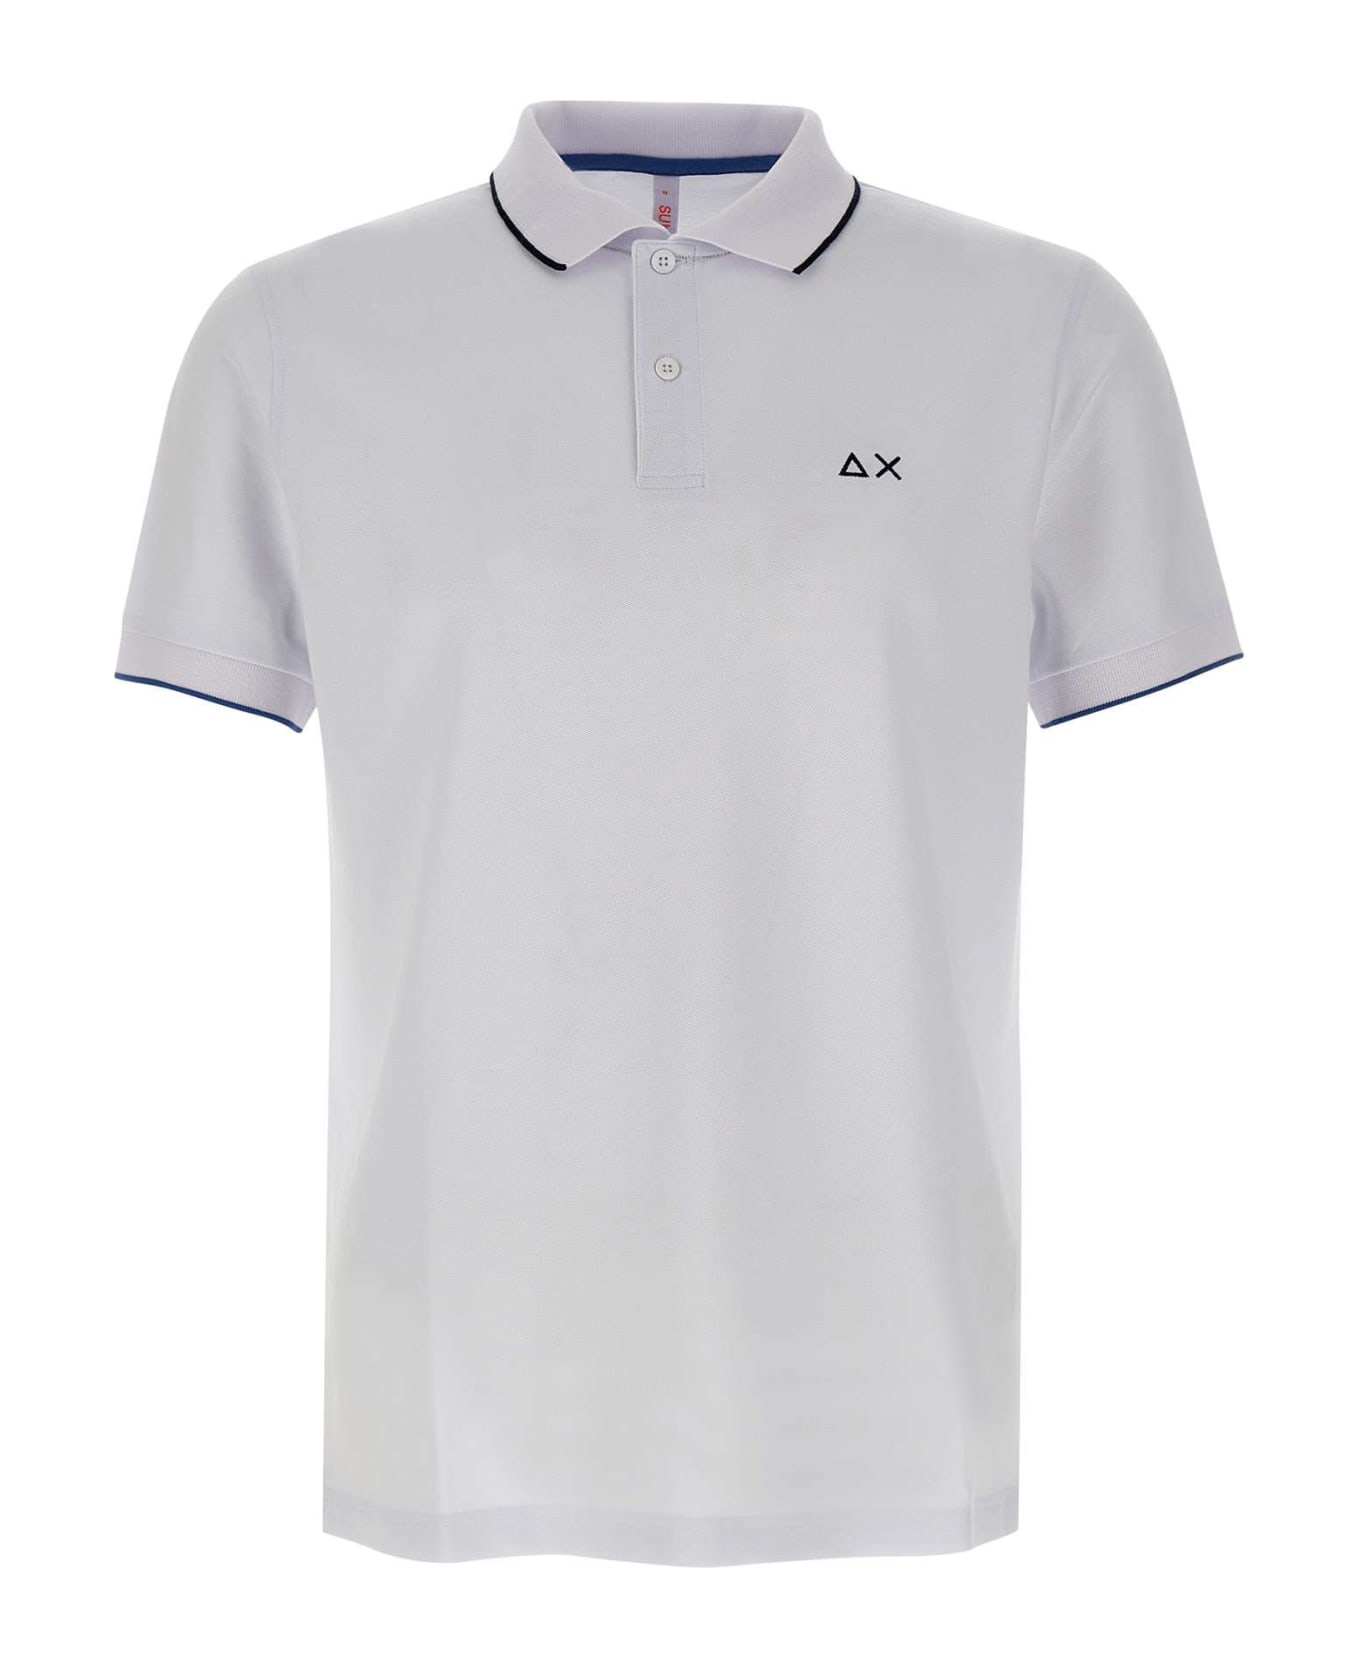 Sun 68 'small Stripe' Cotton Polo Shirt